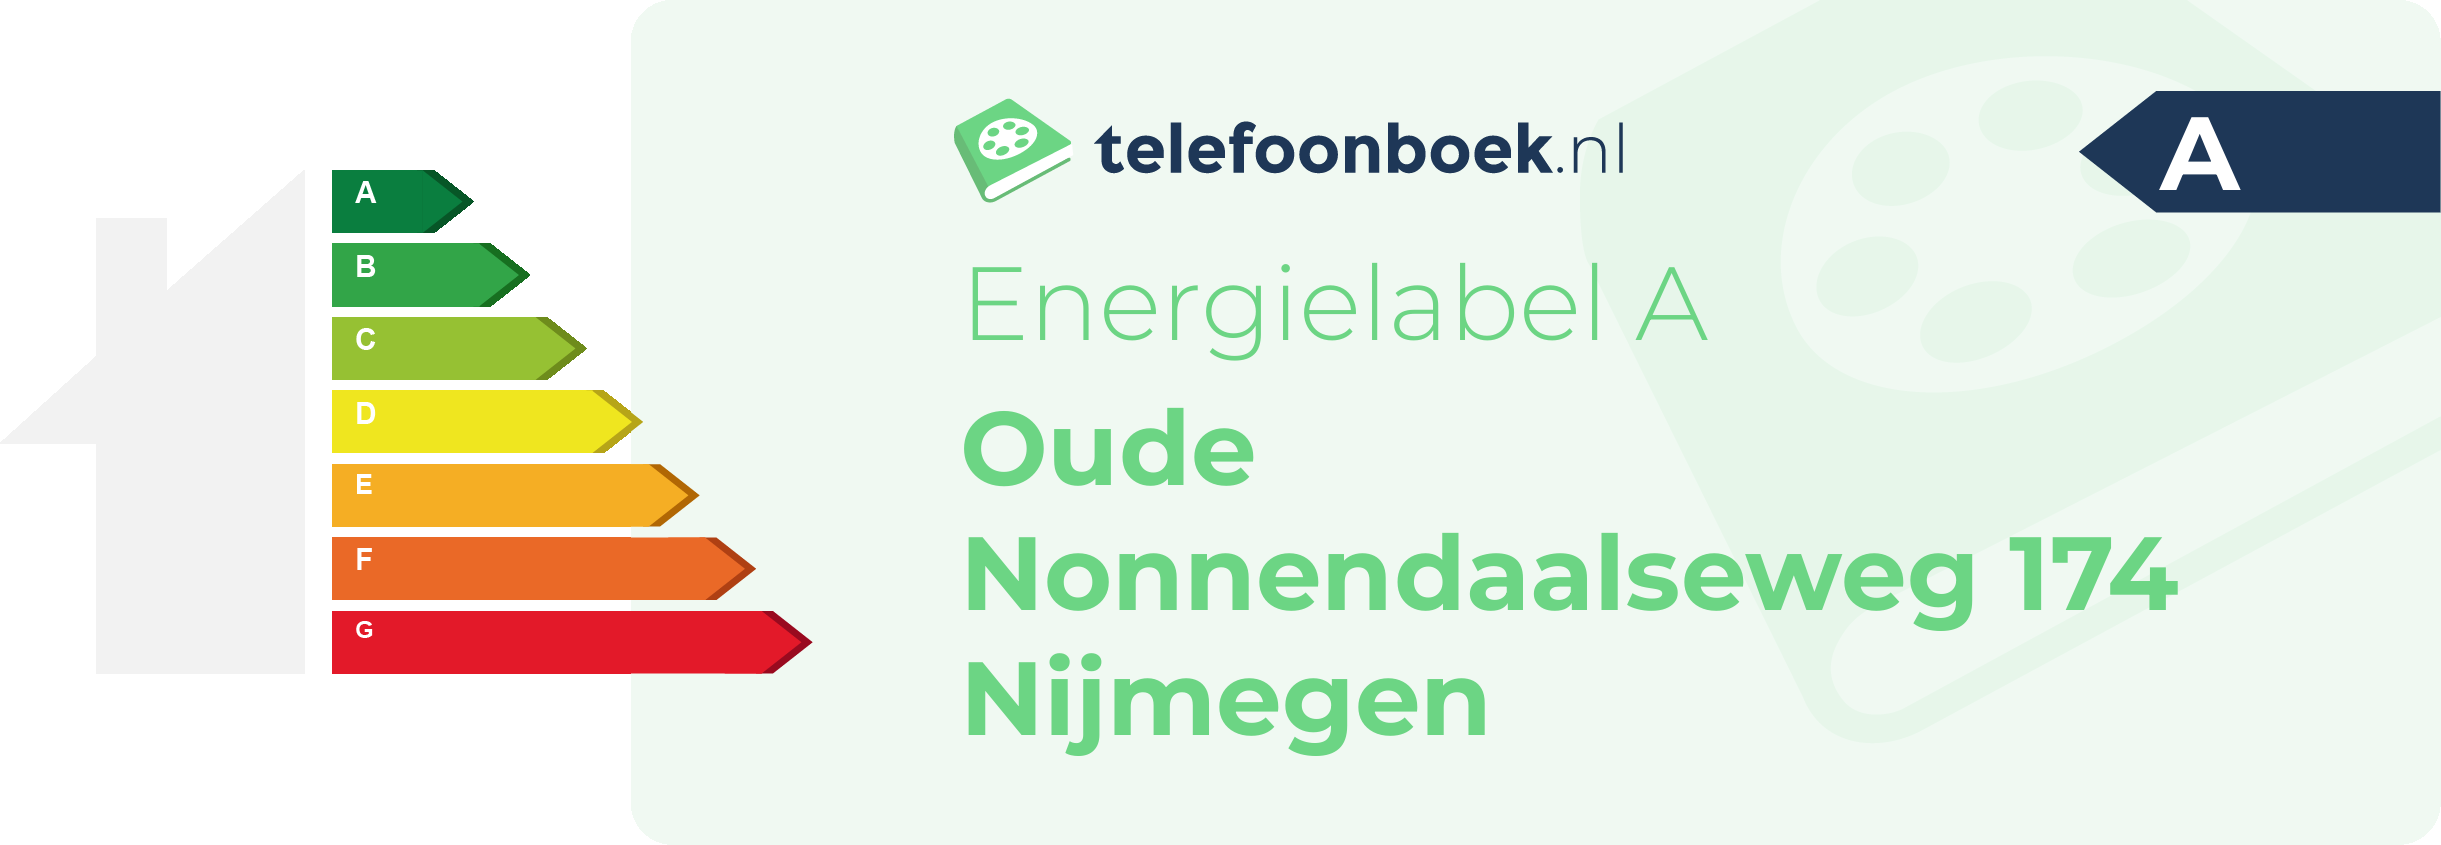 Energielabel Oude Nonnendaalseweg 174 Nijmegen